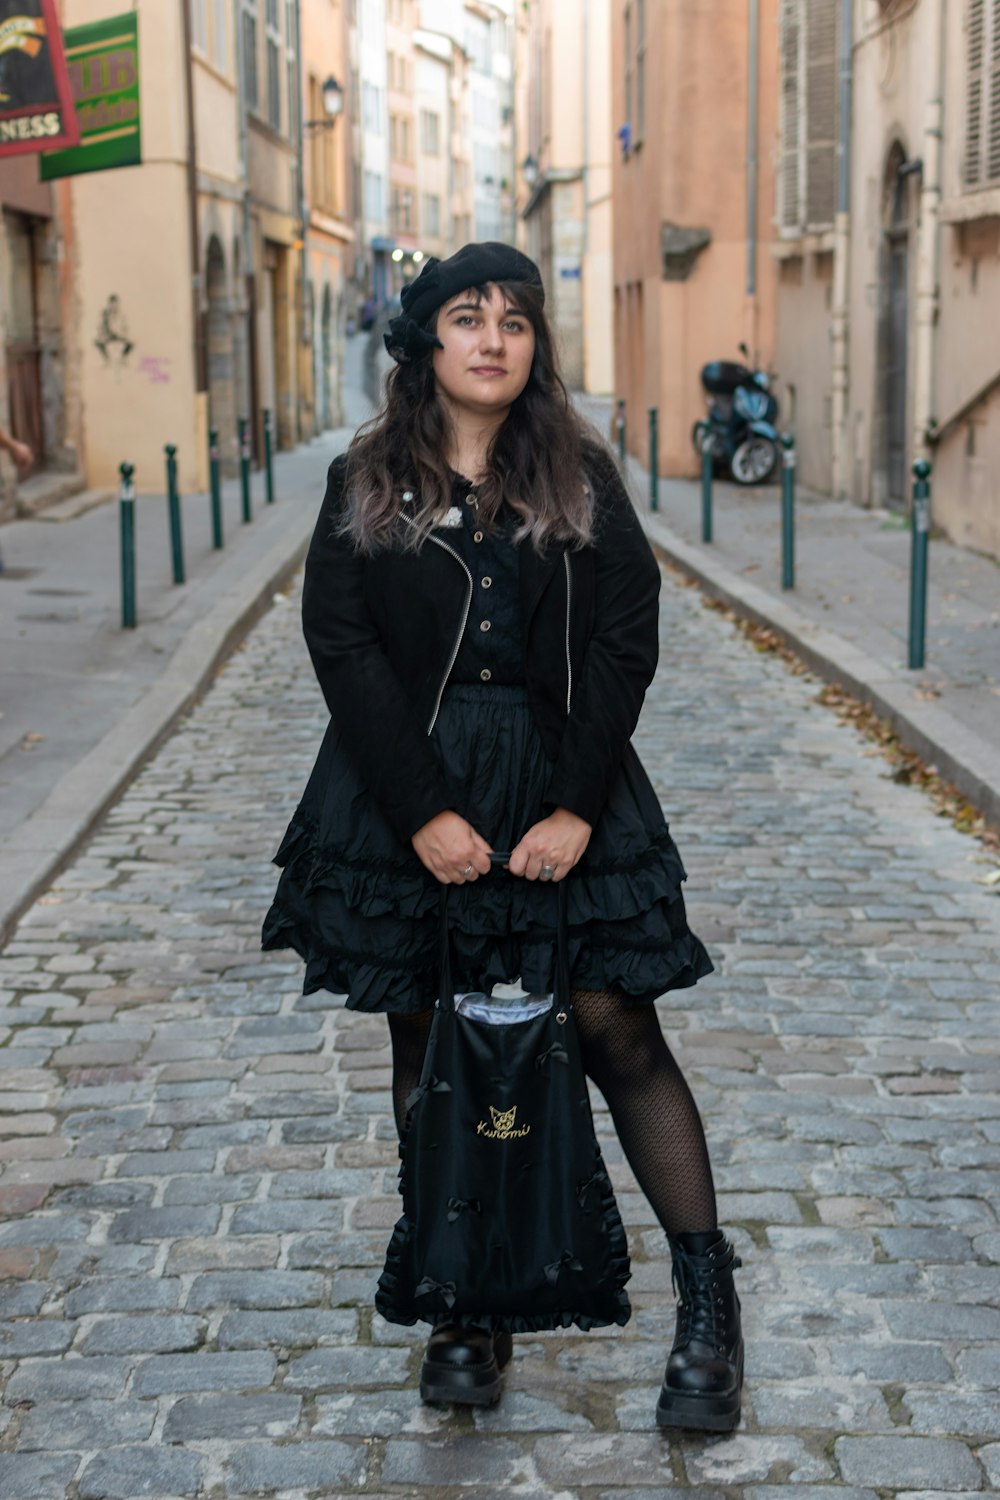 Una donna in un vestito nero e cappello è in piedi su una strada di ciottoli